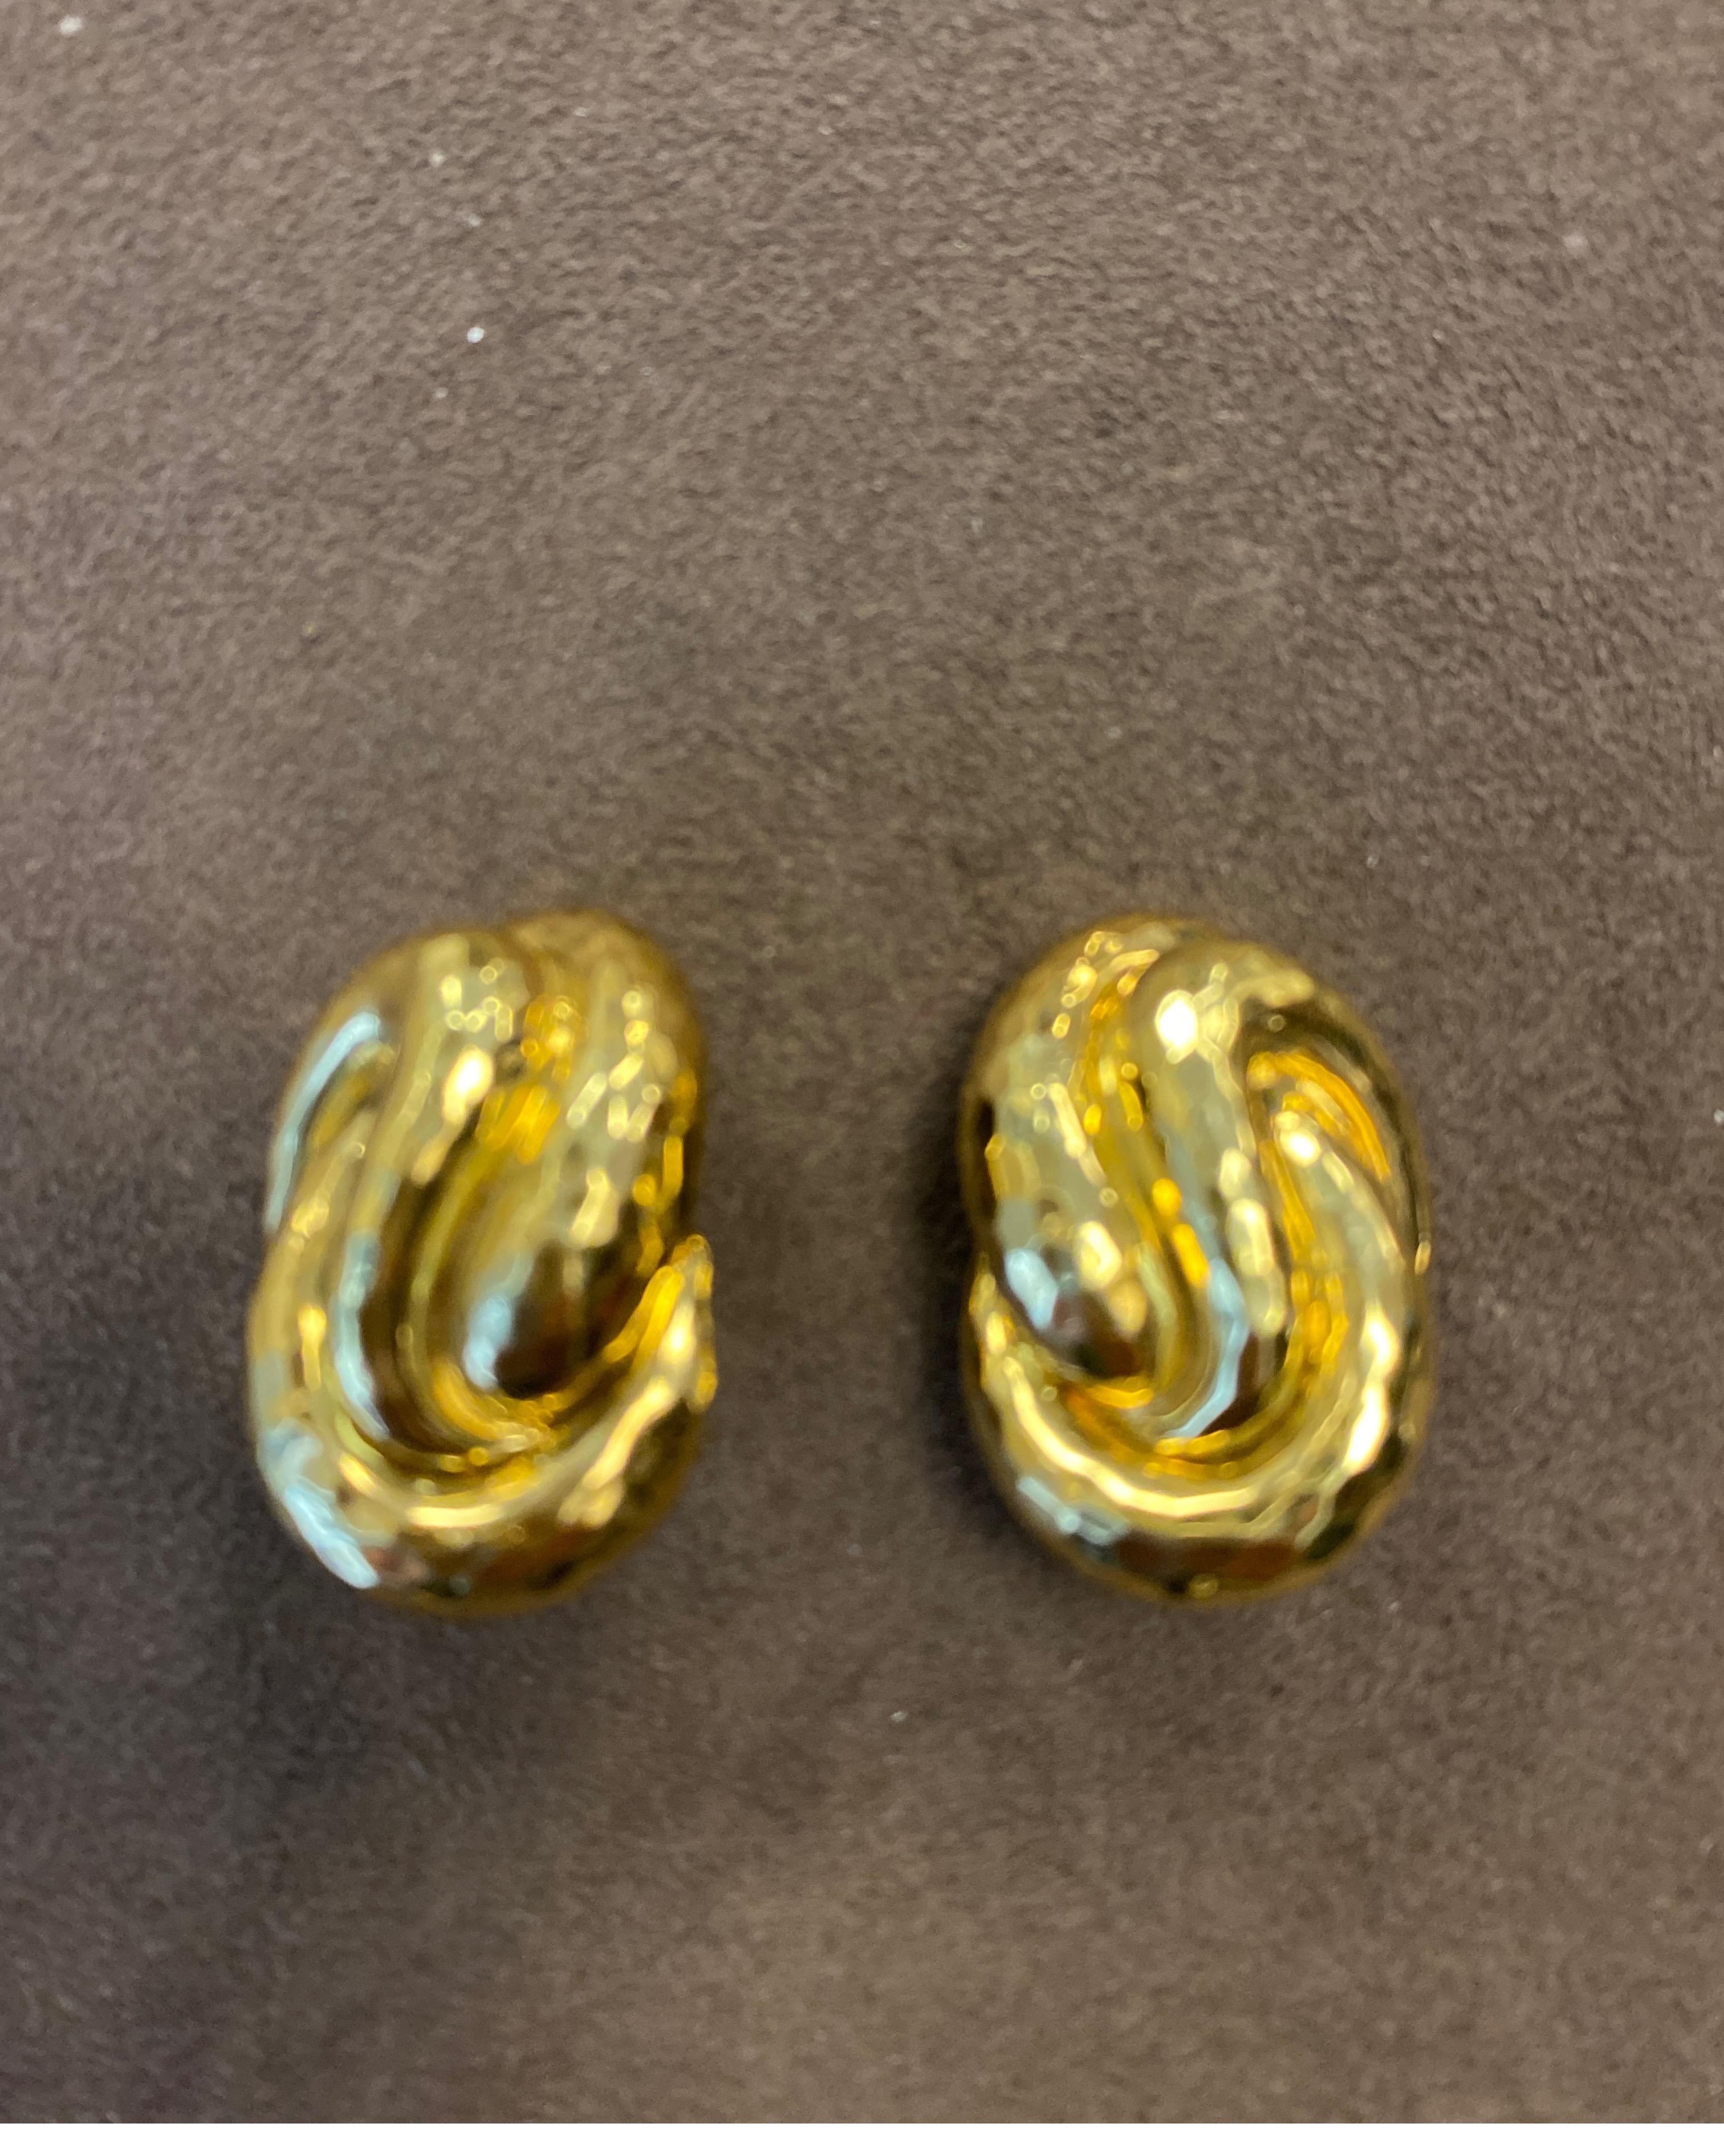 Henry Dunay, boucles d'oreilles à facettes en or jaune 18K.
Dernier prix de vente $7400
Neuf, jamais porté